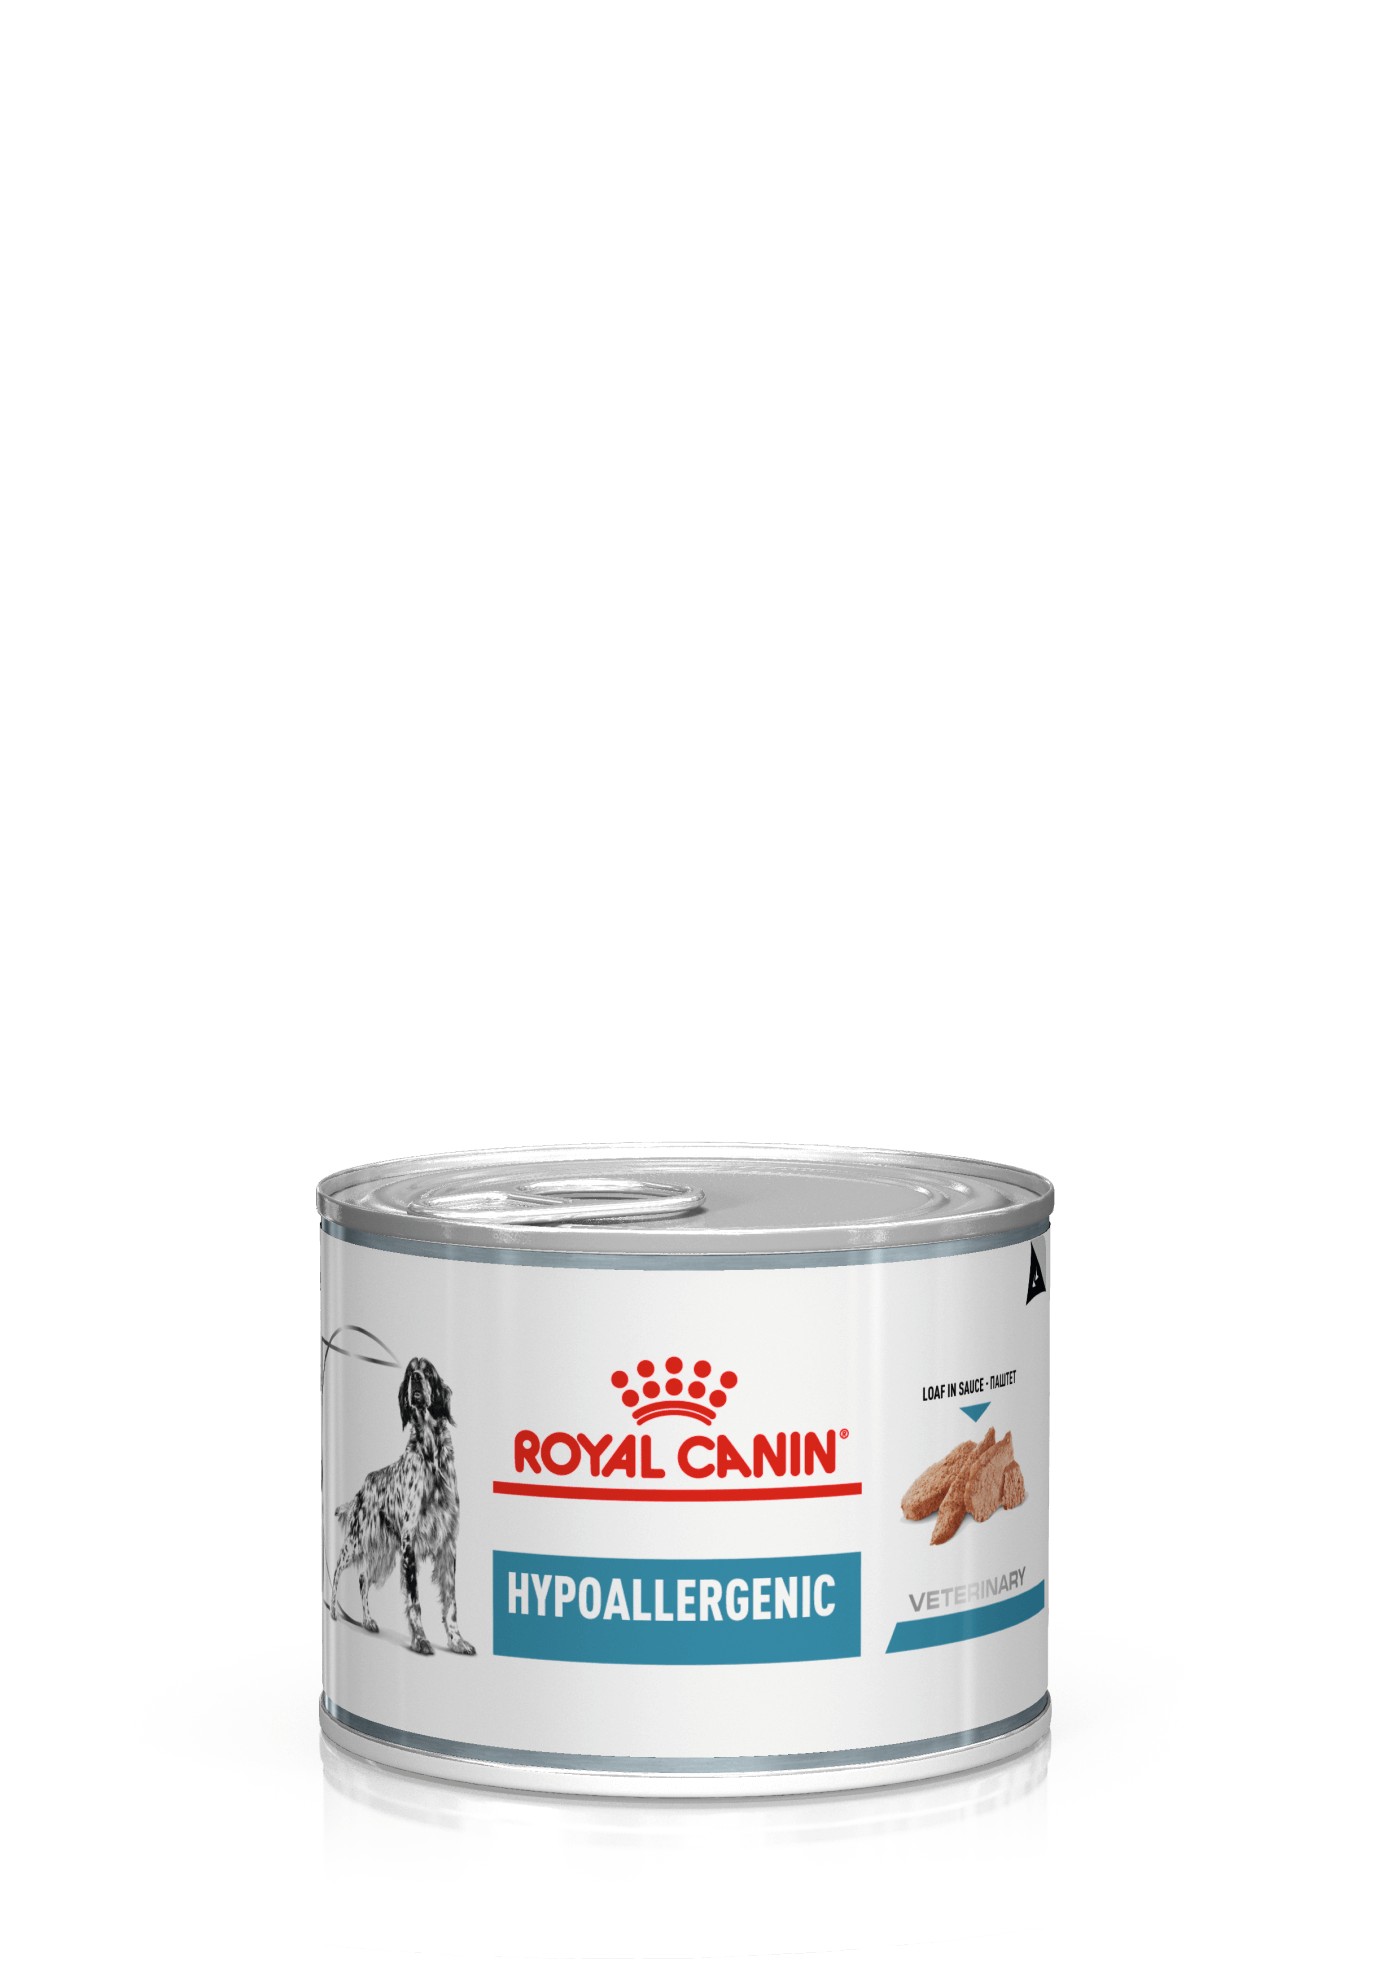 Royal Canin Veterinary Diet Hypoallergenic 200 gram dåse hundefoder